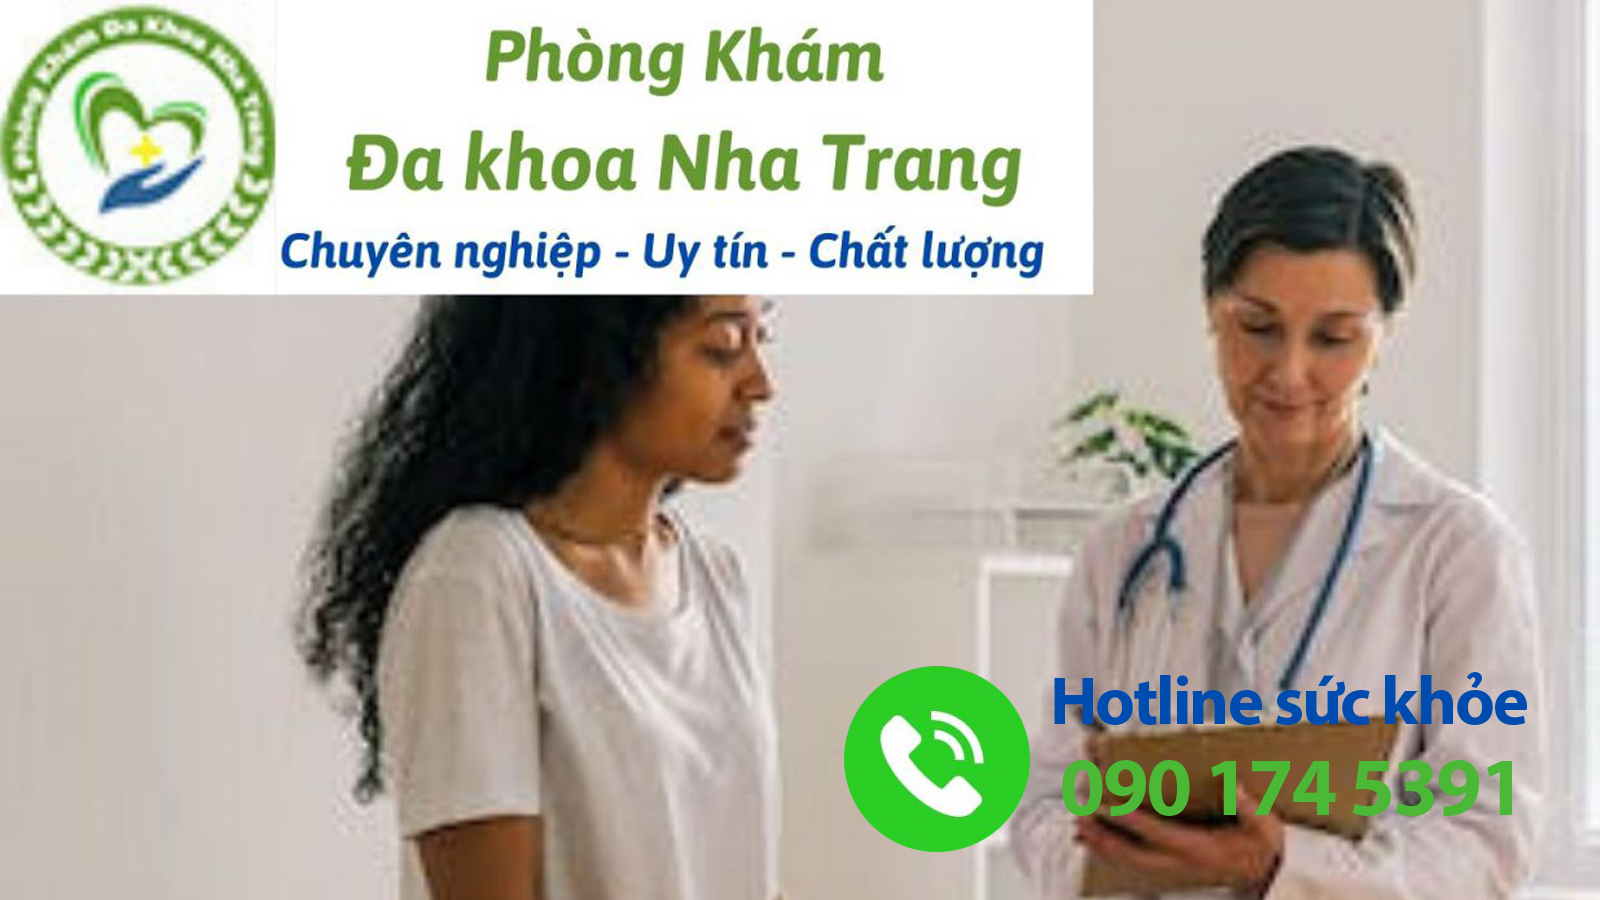 Nơi điều trị viêm bao quy đầu uy tín - chất lượng tại Nha Trang, Khánh Hòa